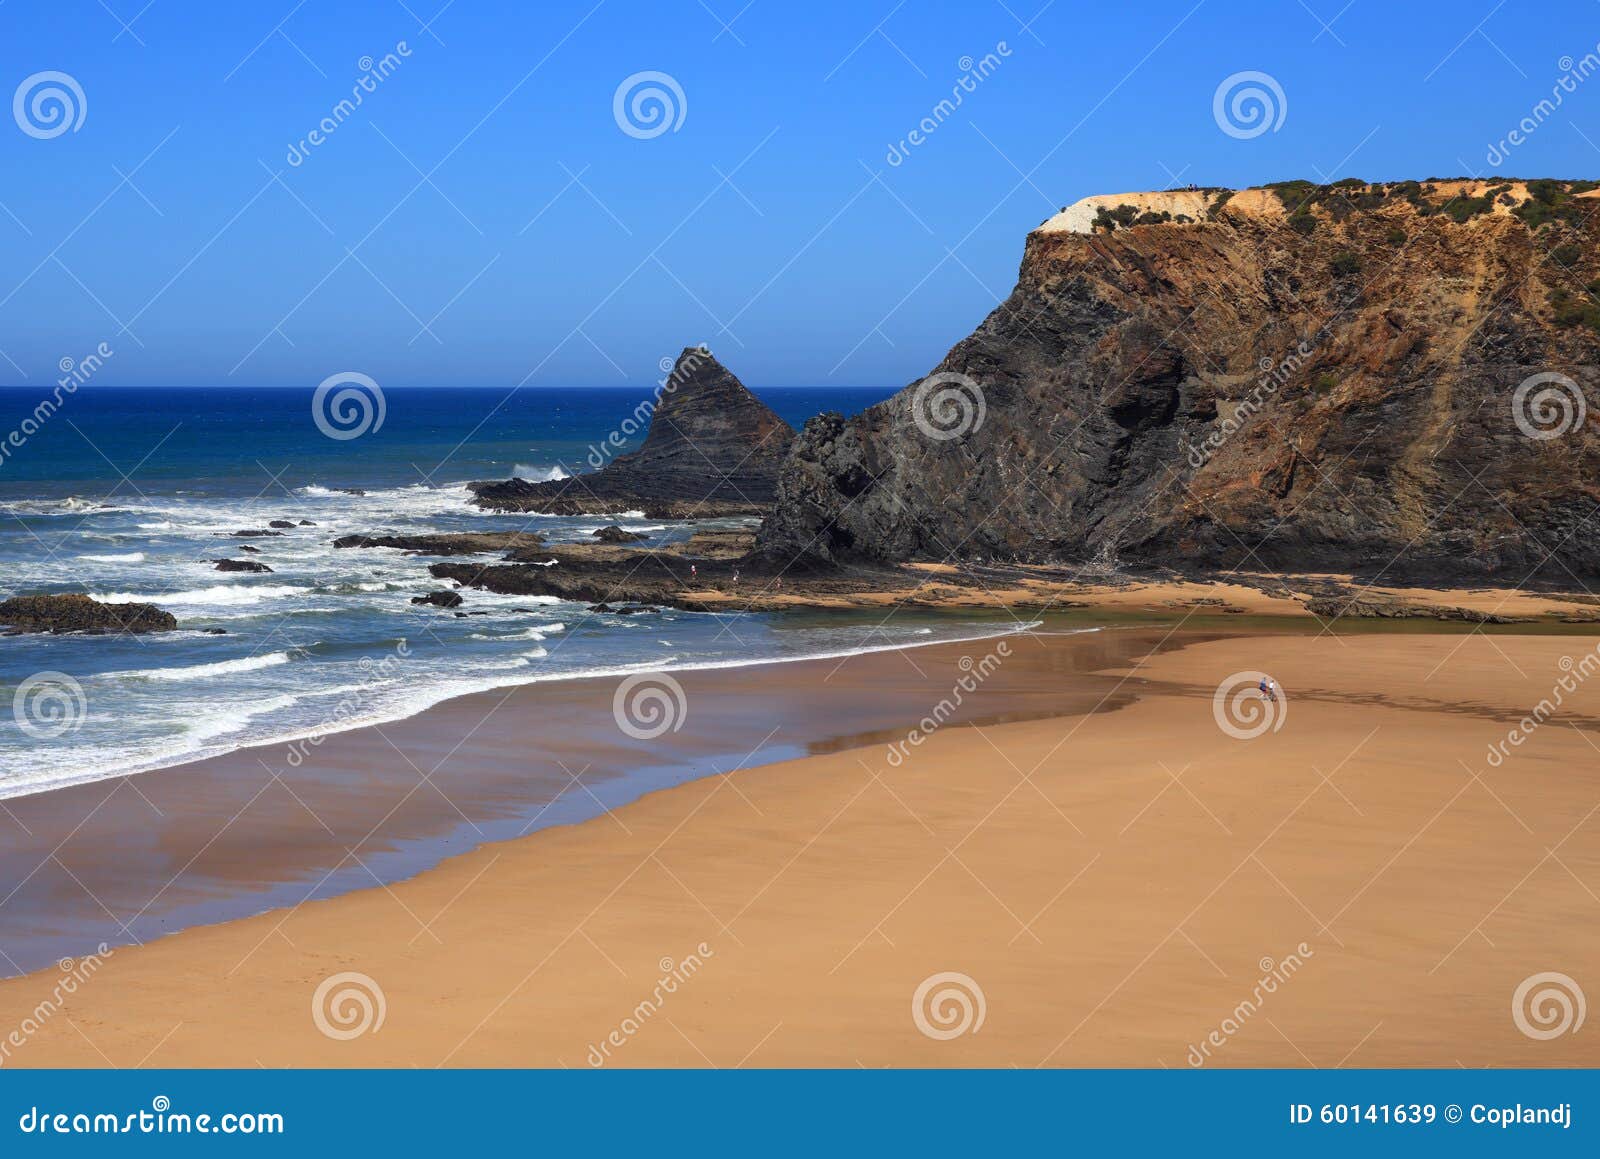 odeceixe beach, vicentine coast, alentejo, portugal.